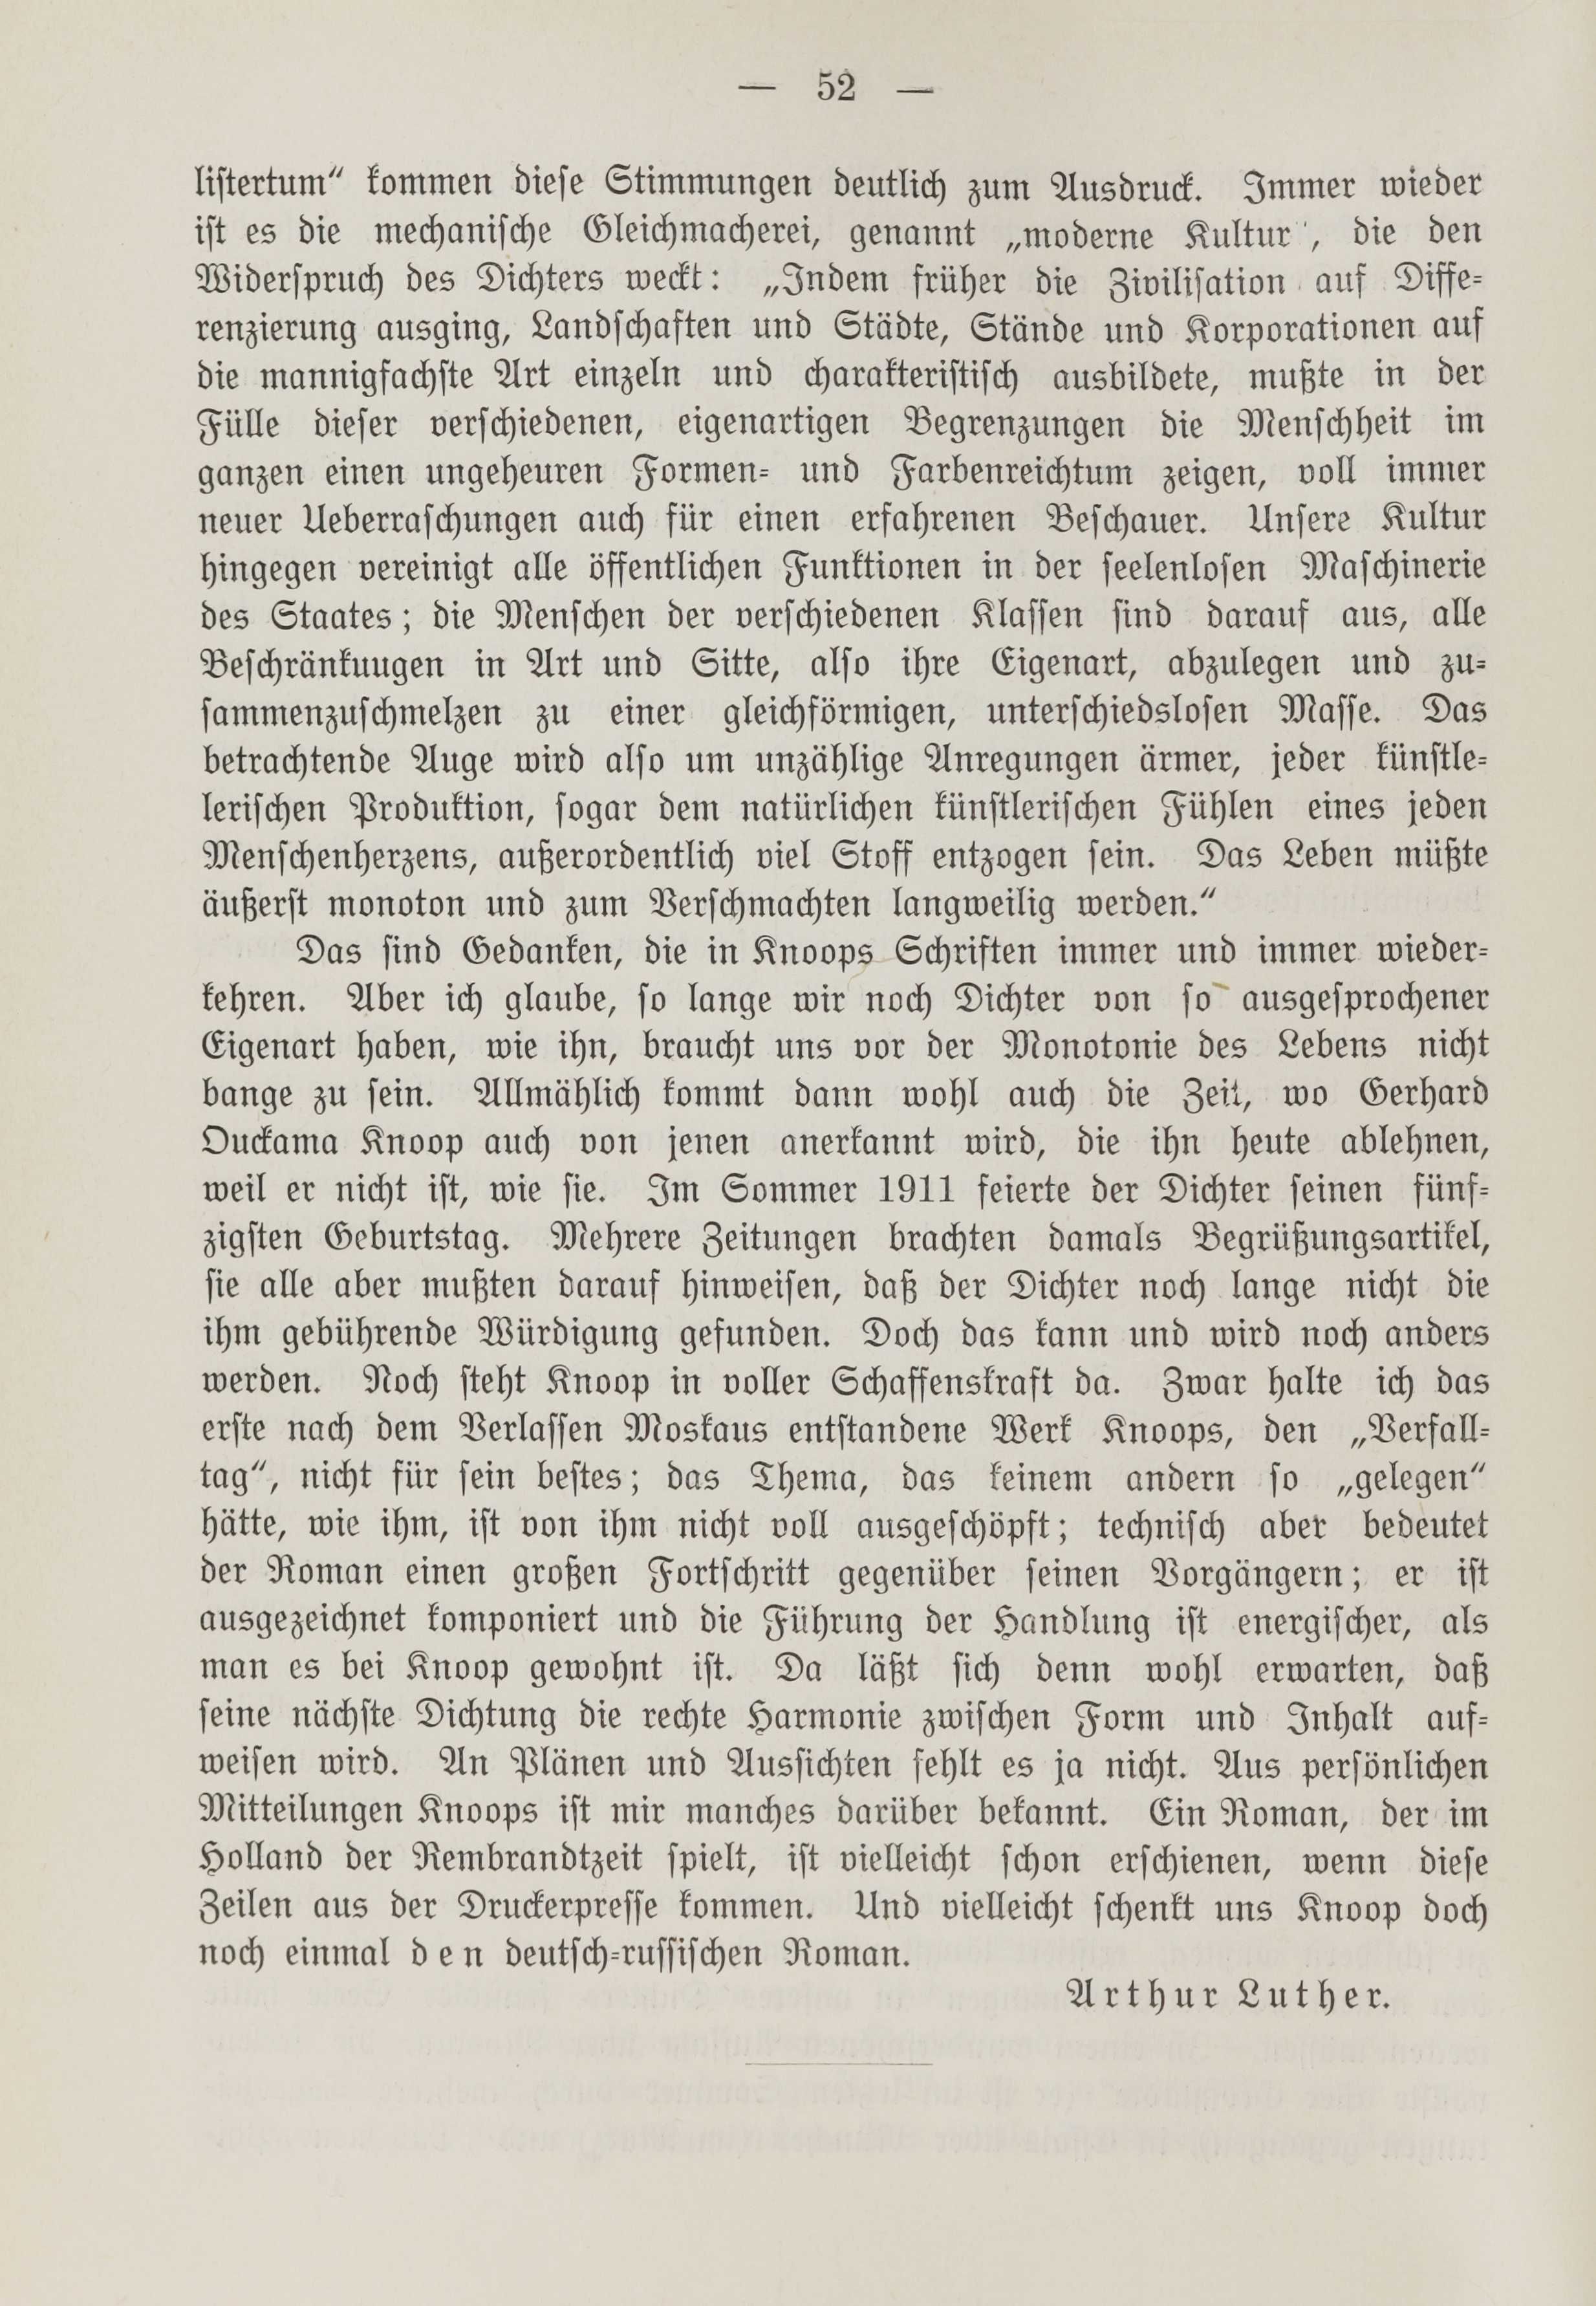 Deutsche Monatsschrift für Russland [1] (1912) | 59. (52) Haupttext